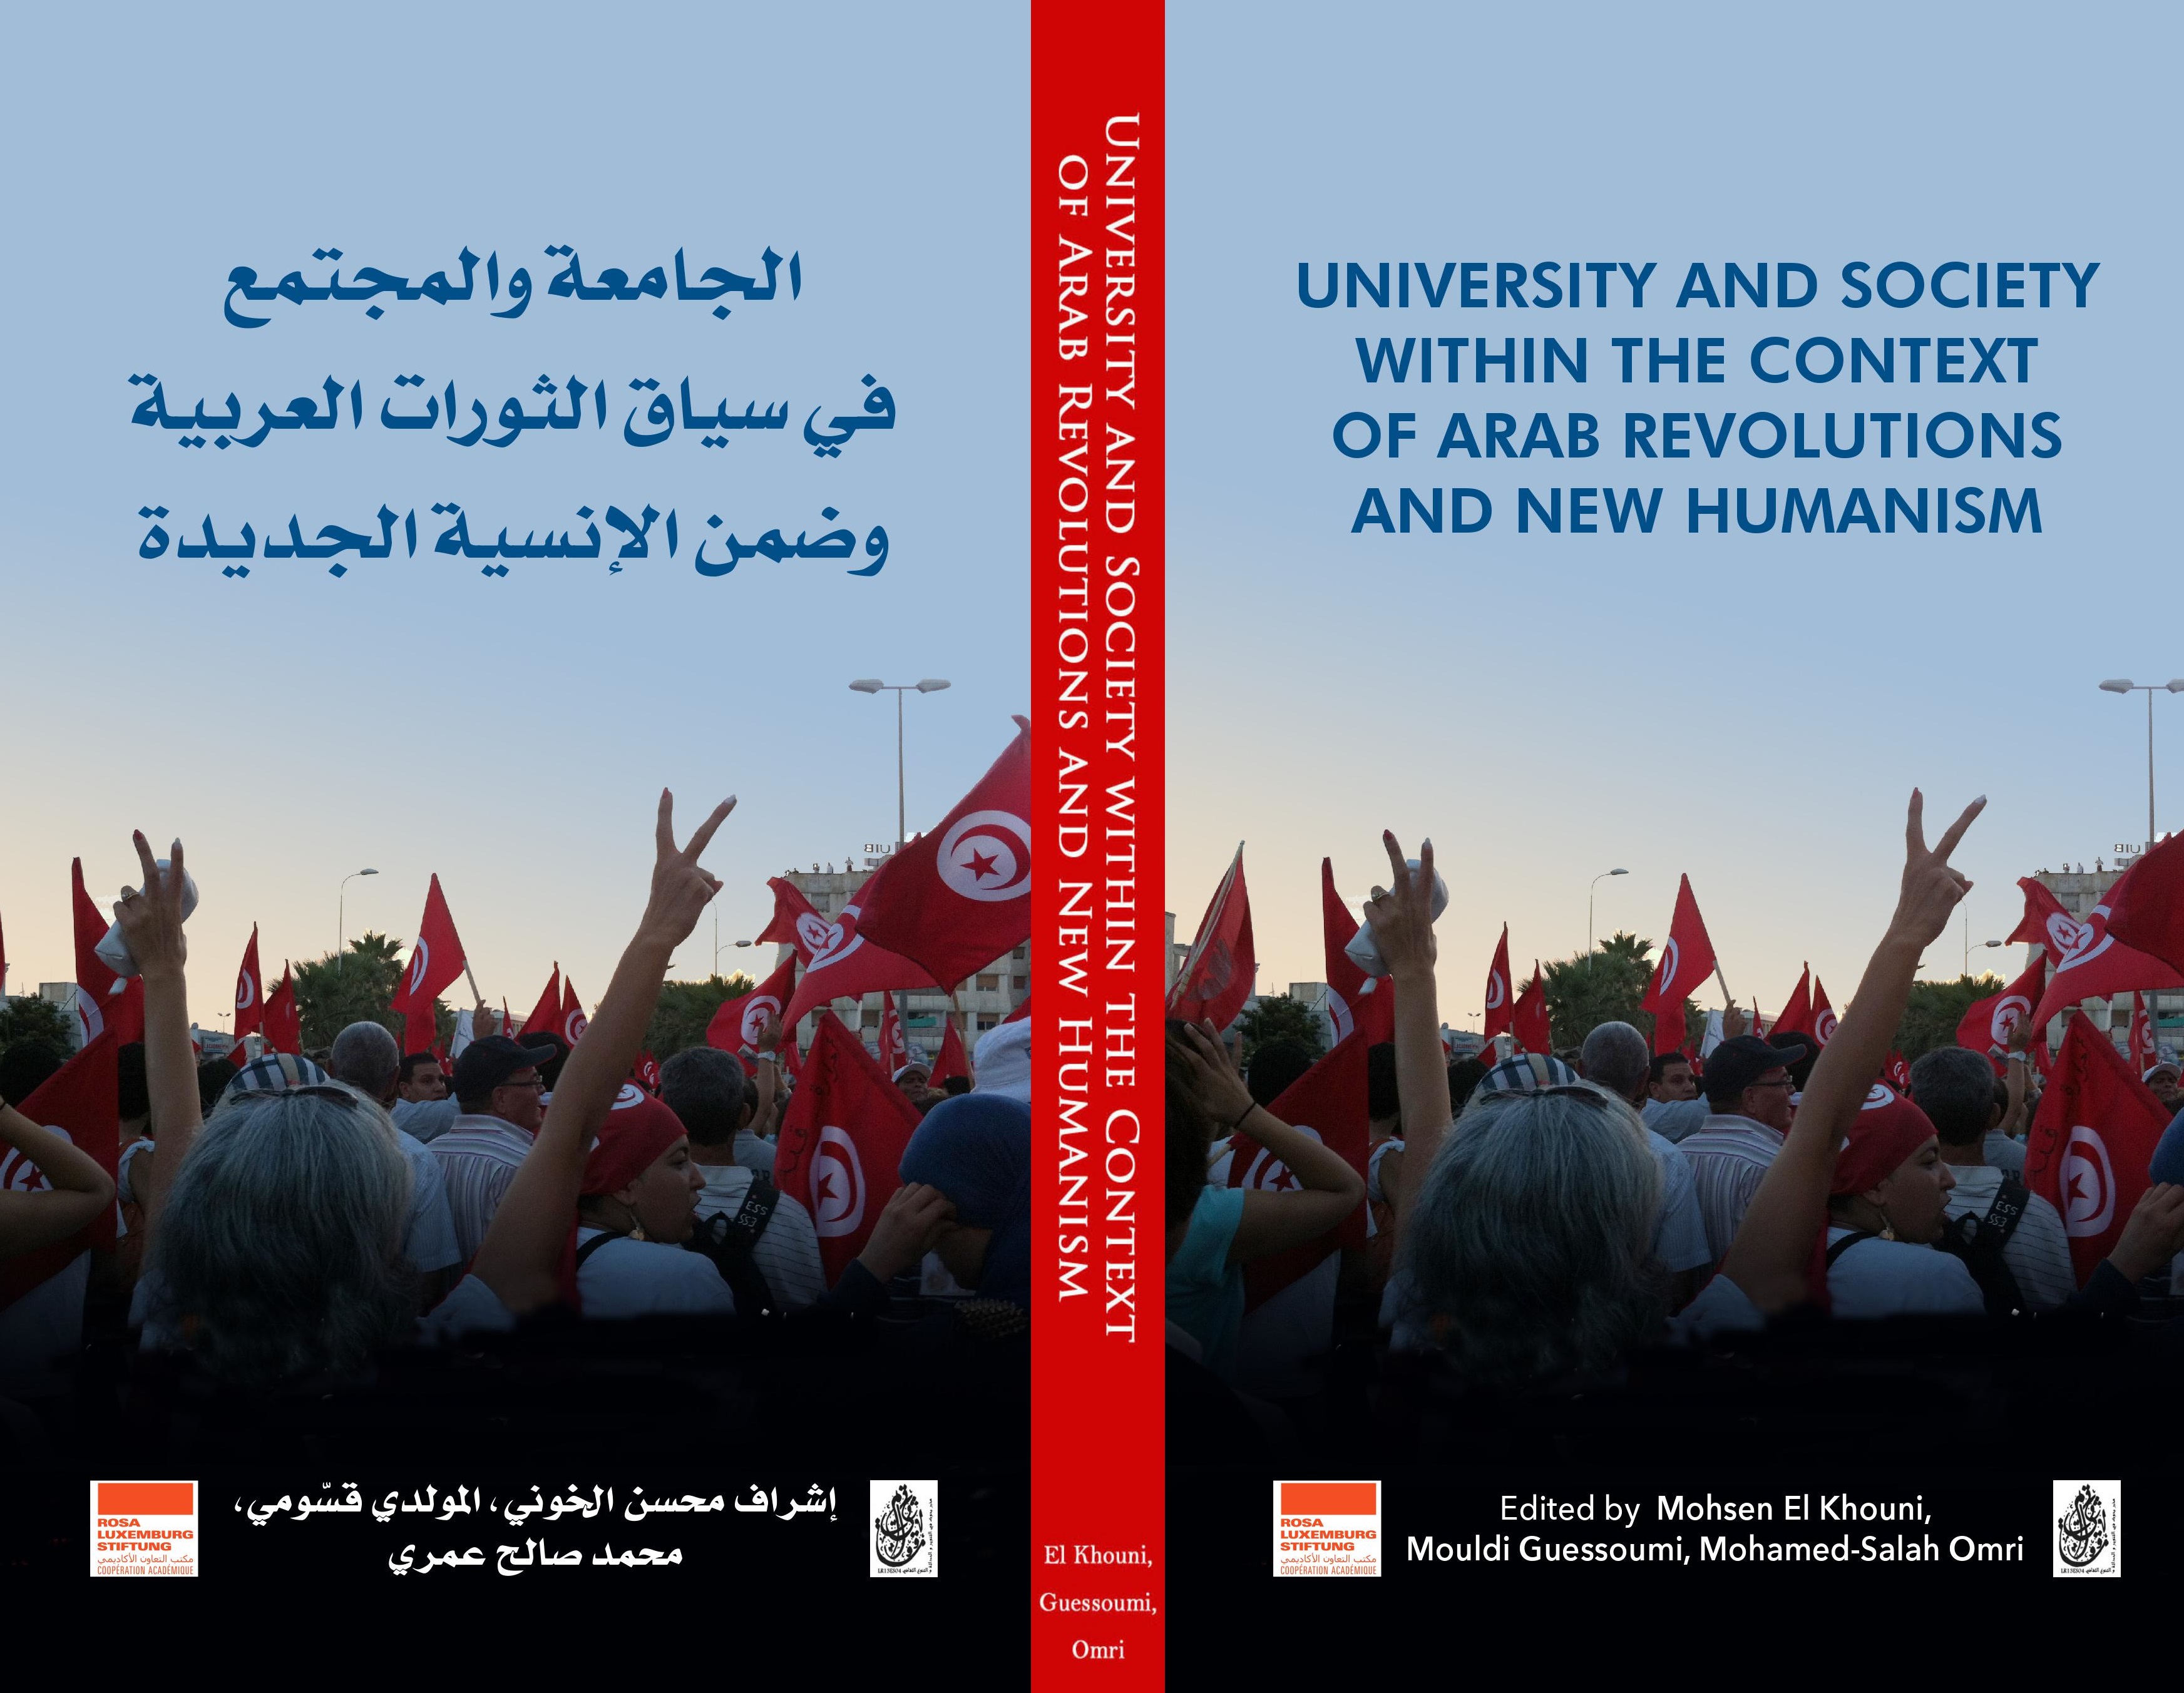 Lire la suite à propos de l’article Université et société dans le contexte des révolutions arabes et du nouvel humanisme